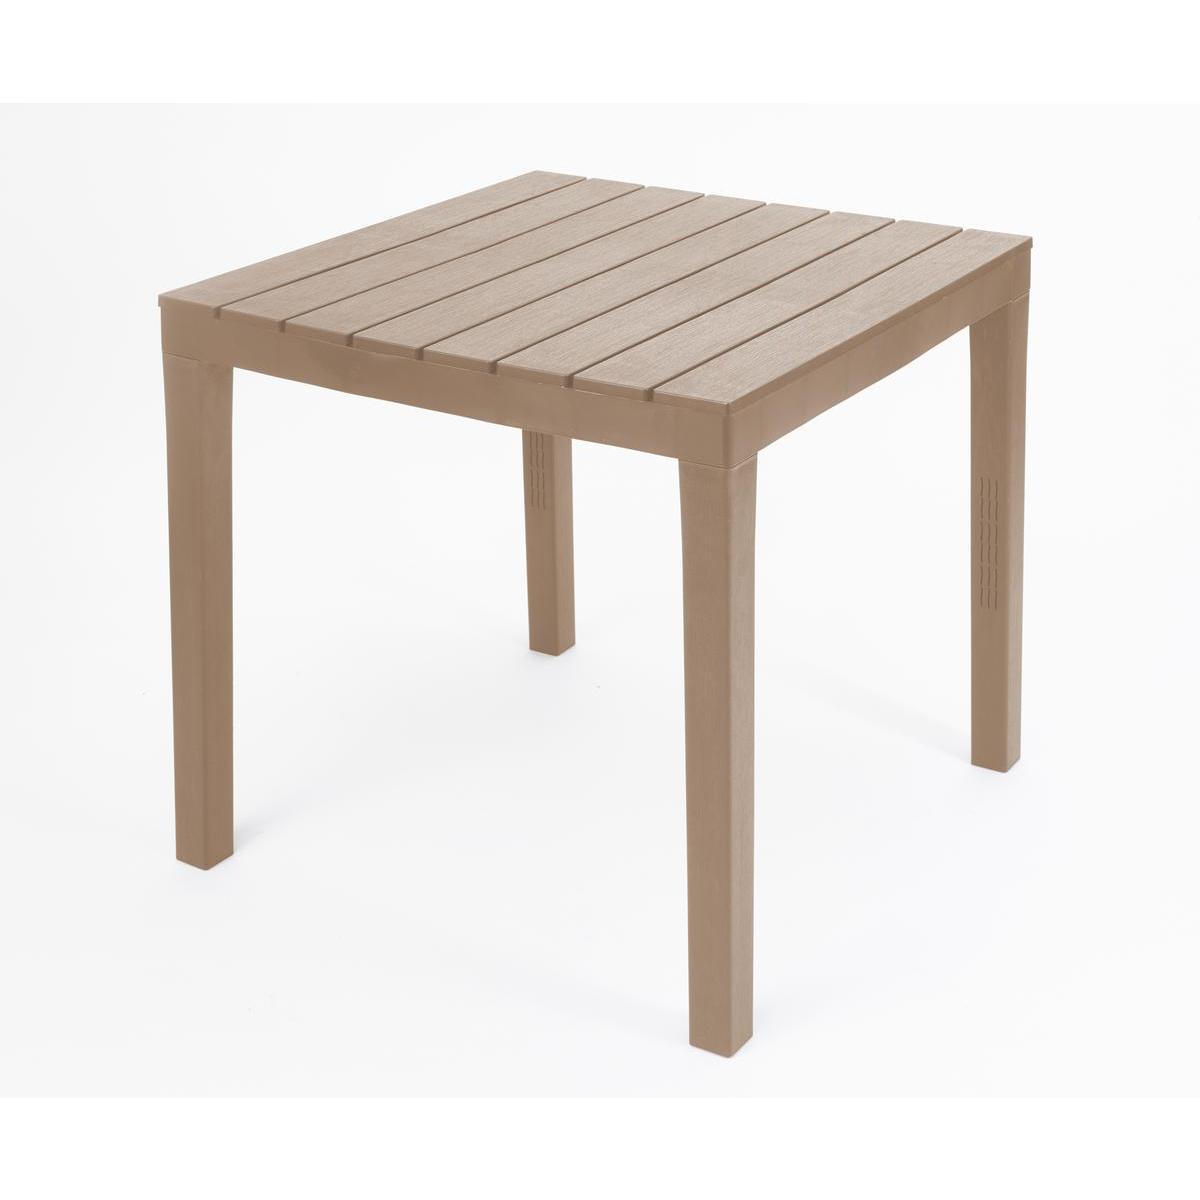 Table effet bois carrée - 80 x 80 x H 72 cm